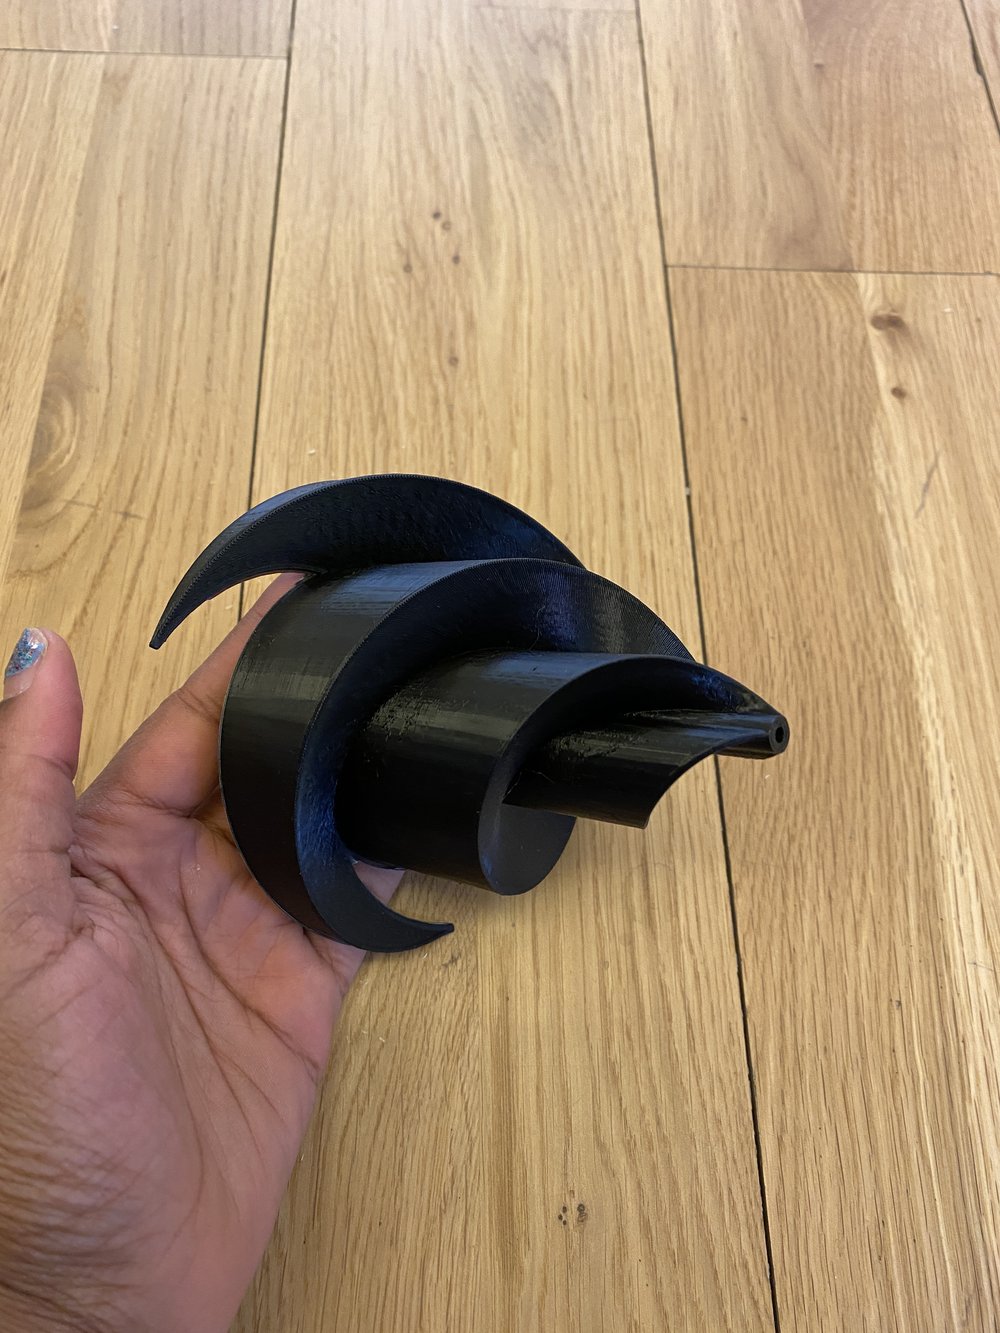 3D-printed Rotor